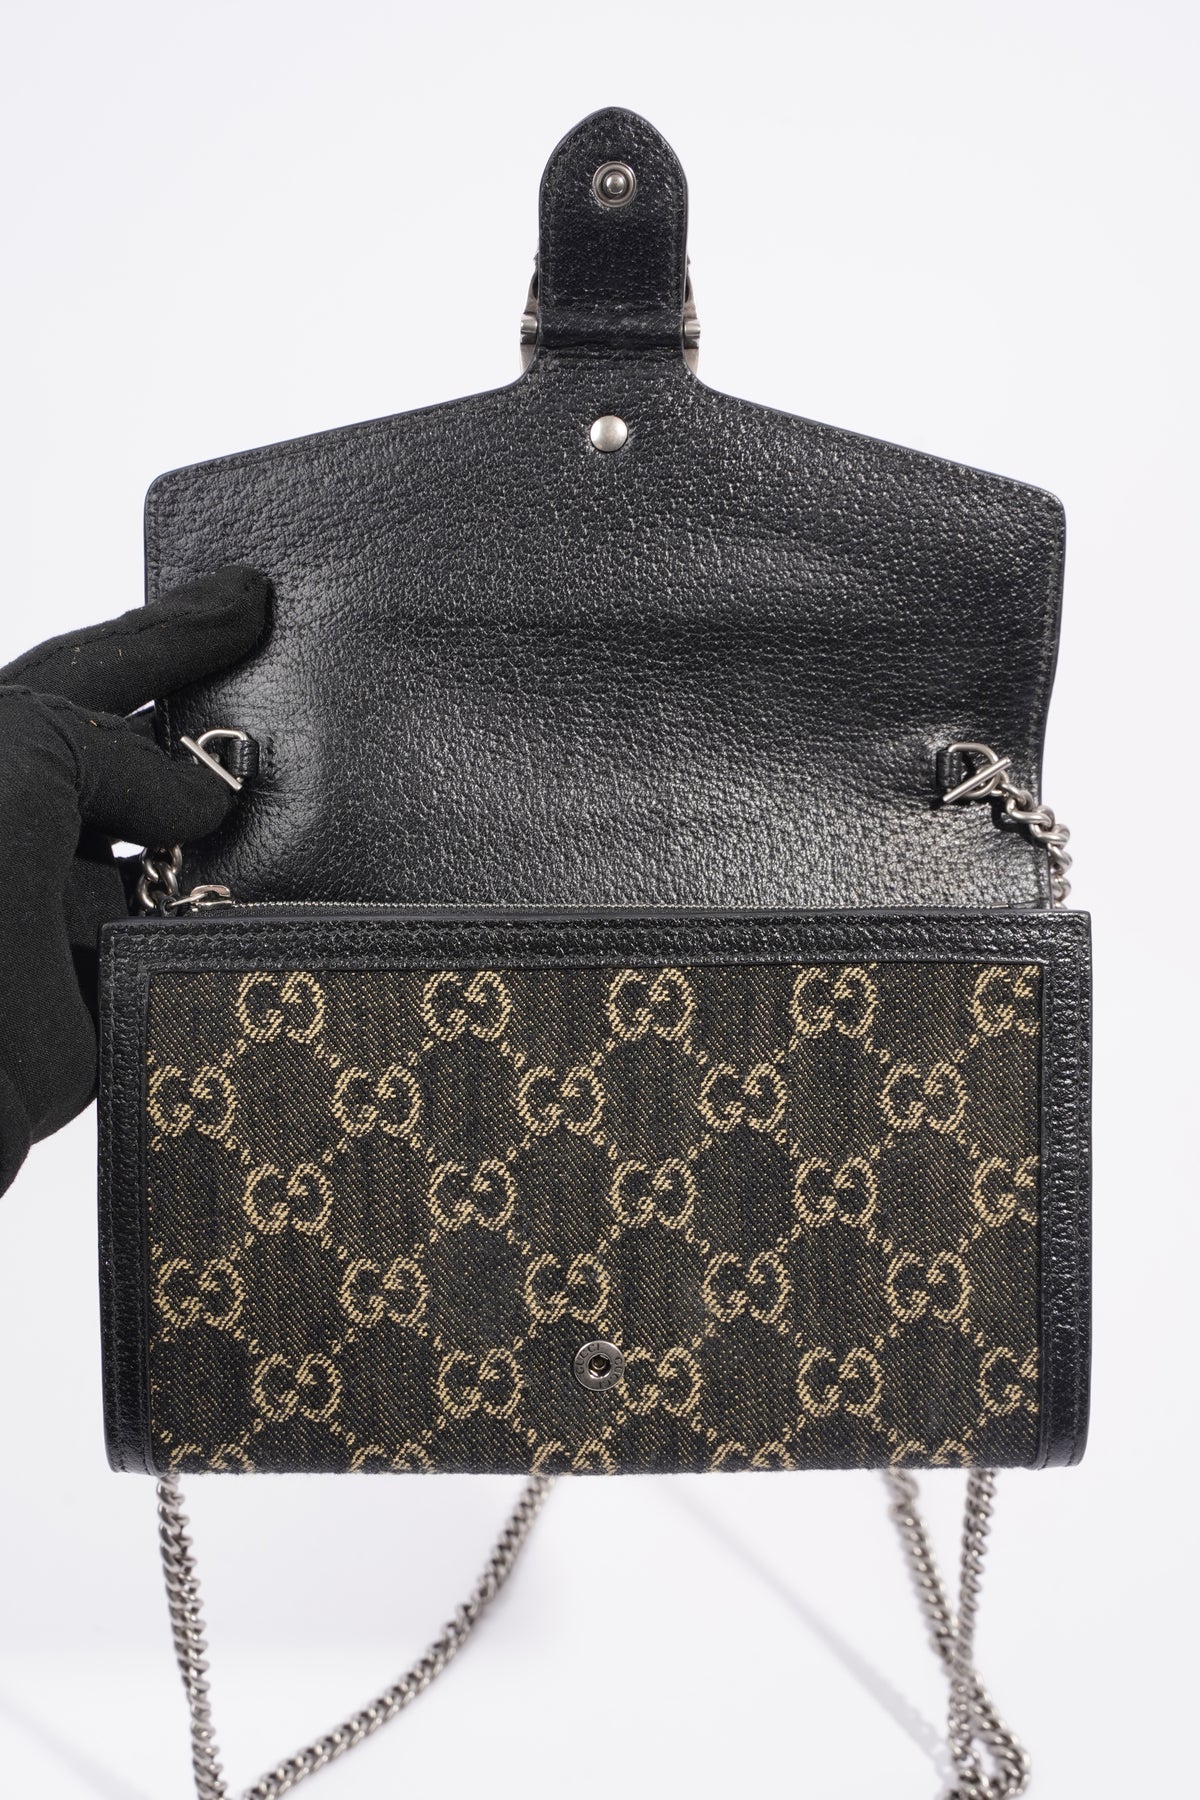 Gucci Dionysus - Mini | Handbag Clinic